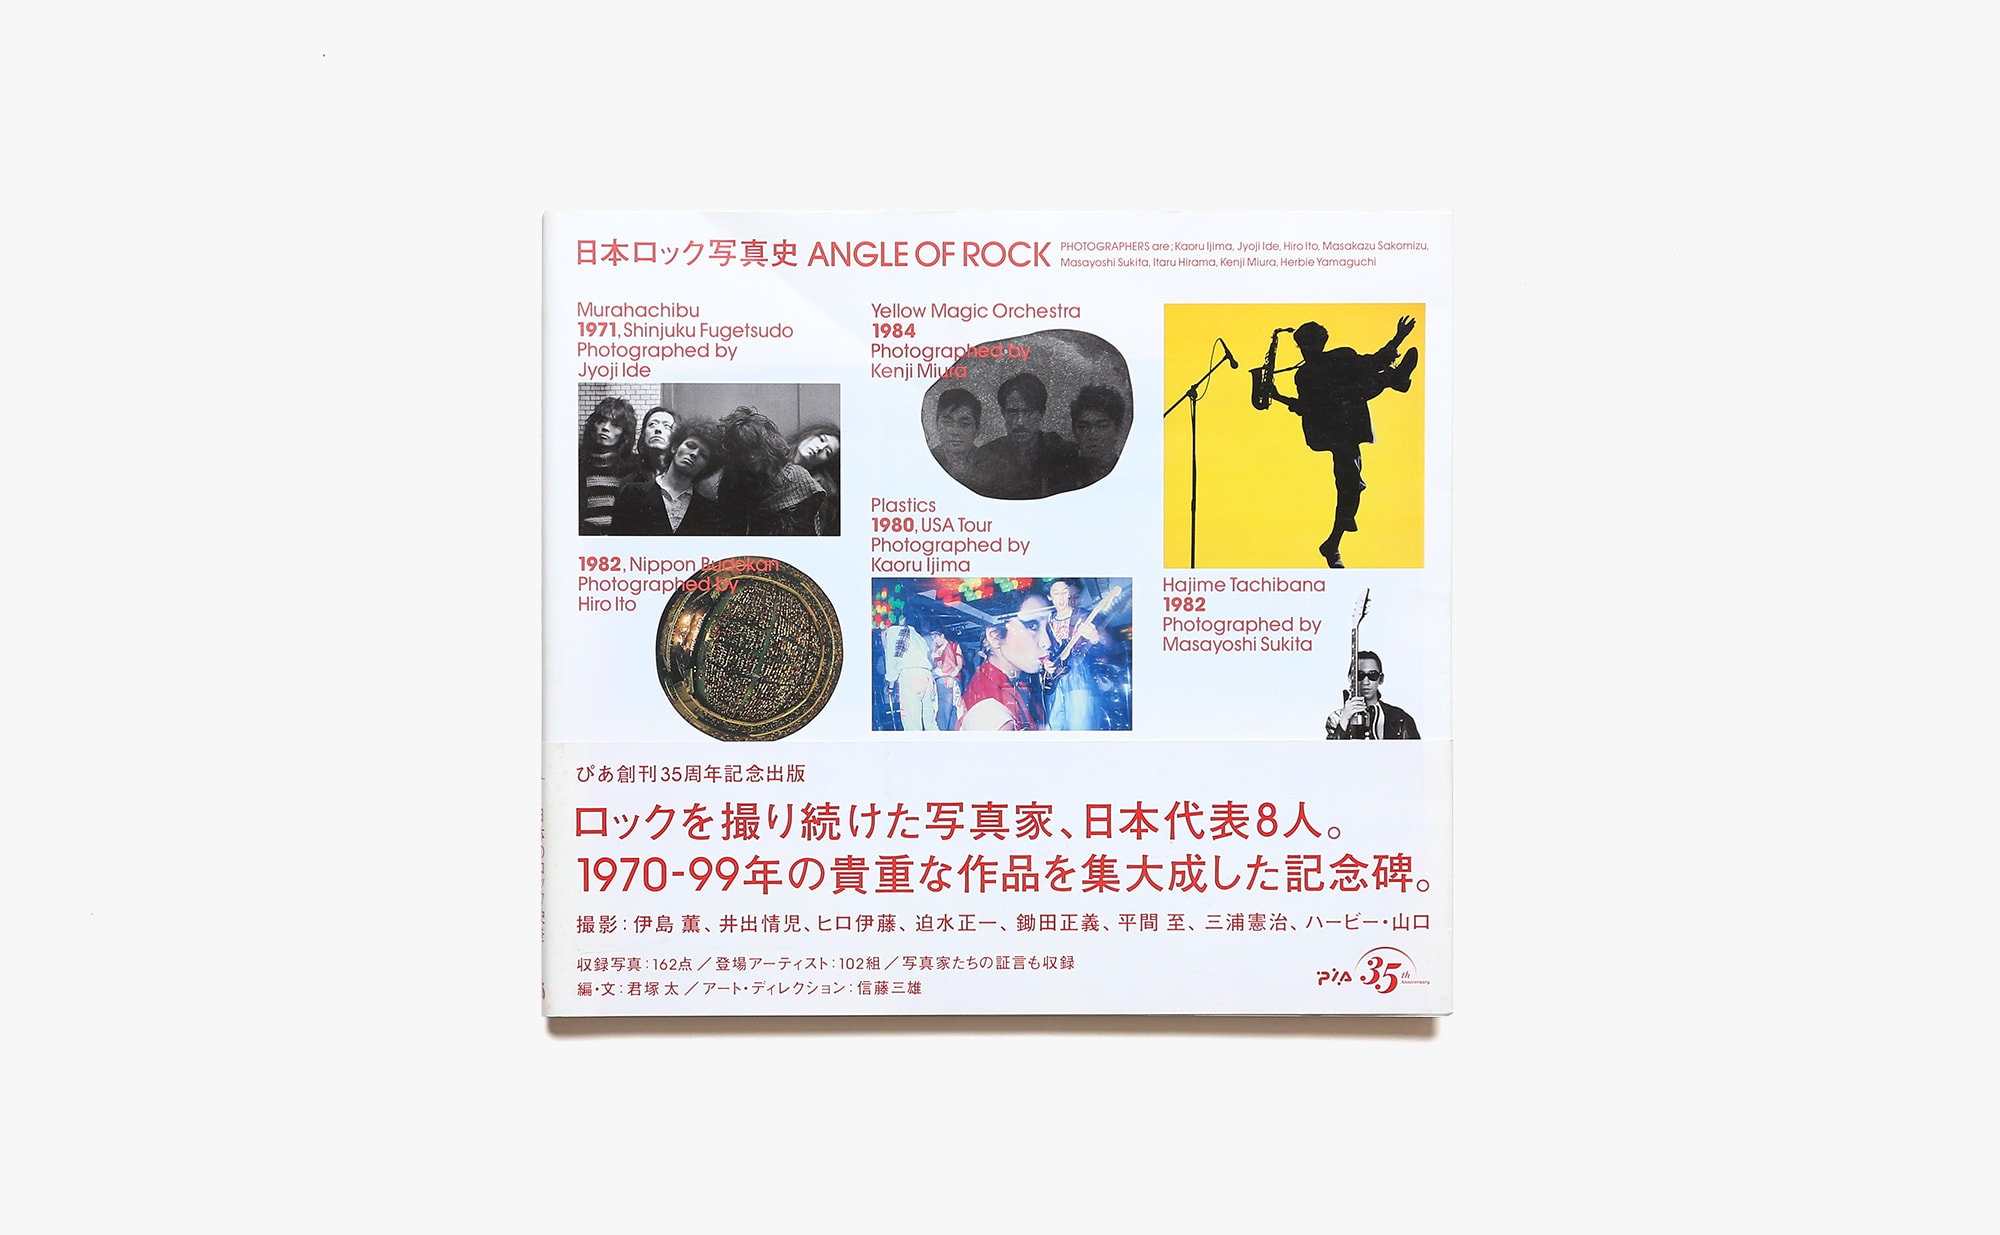 日本ロック写真史 ANGLE OF ROCK | 鋤田正義、三浦憲治 他